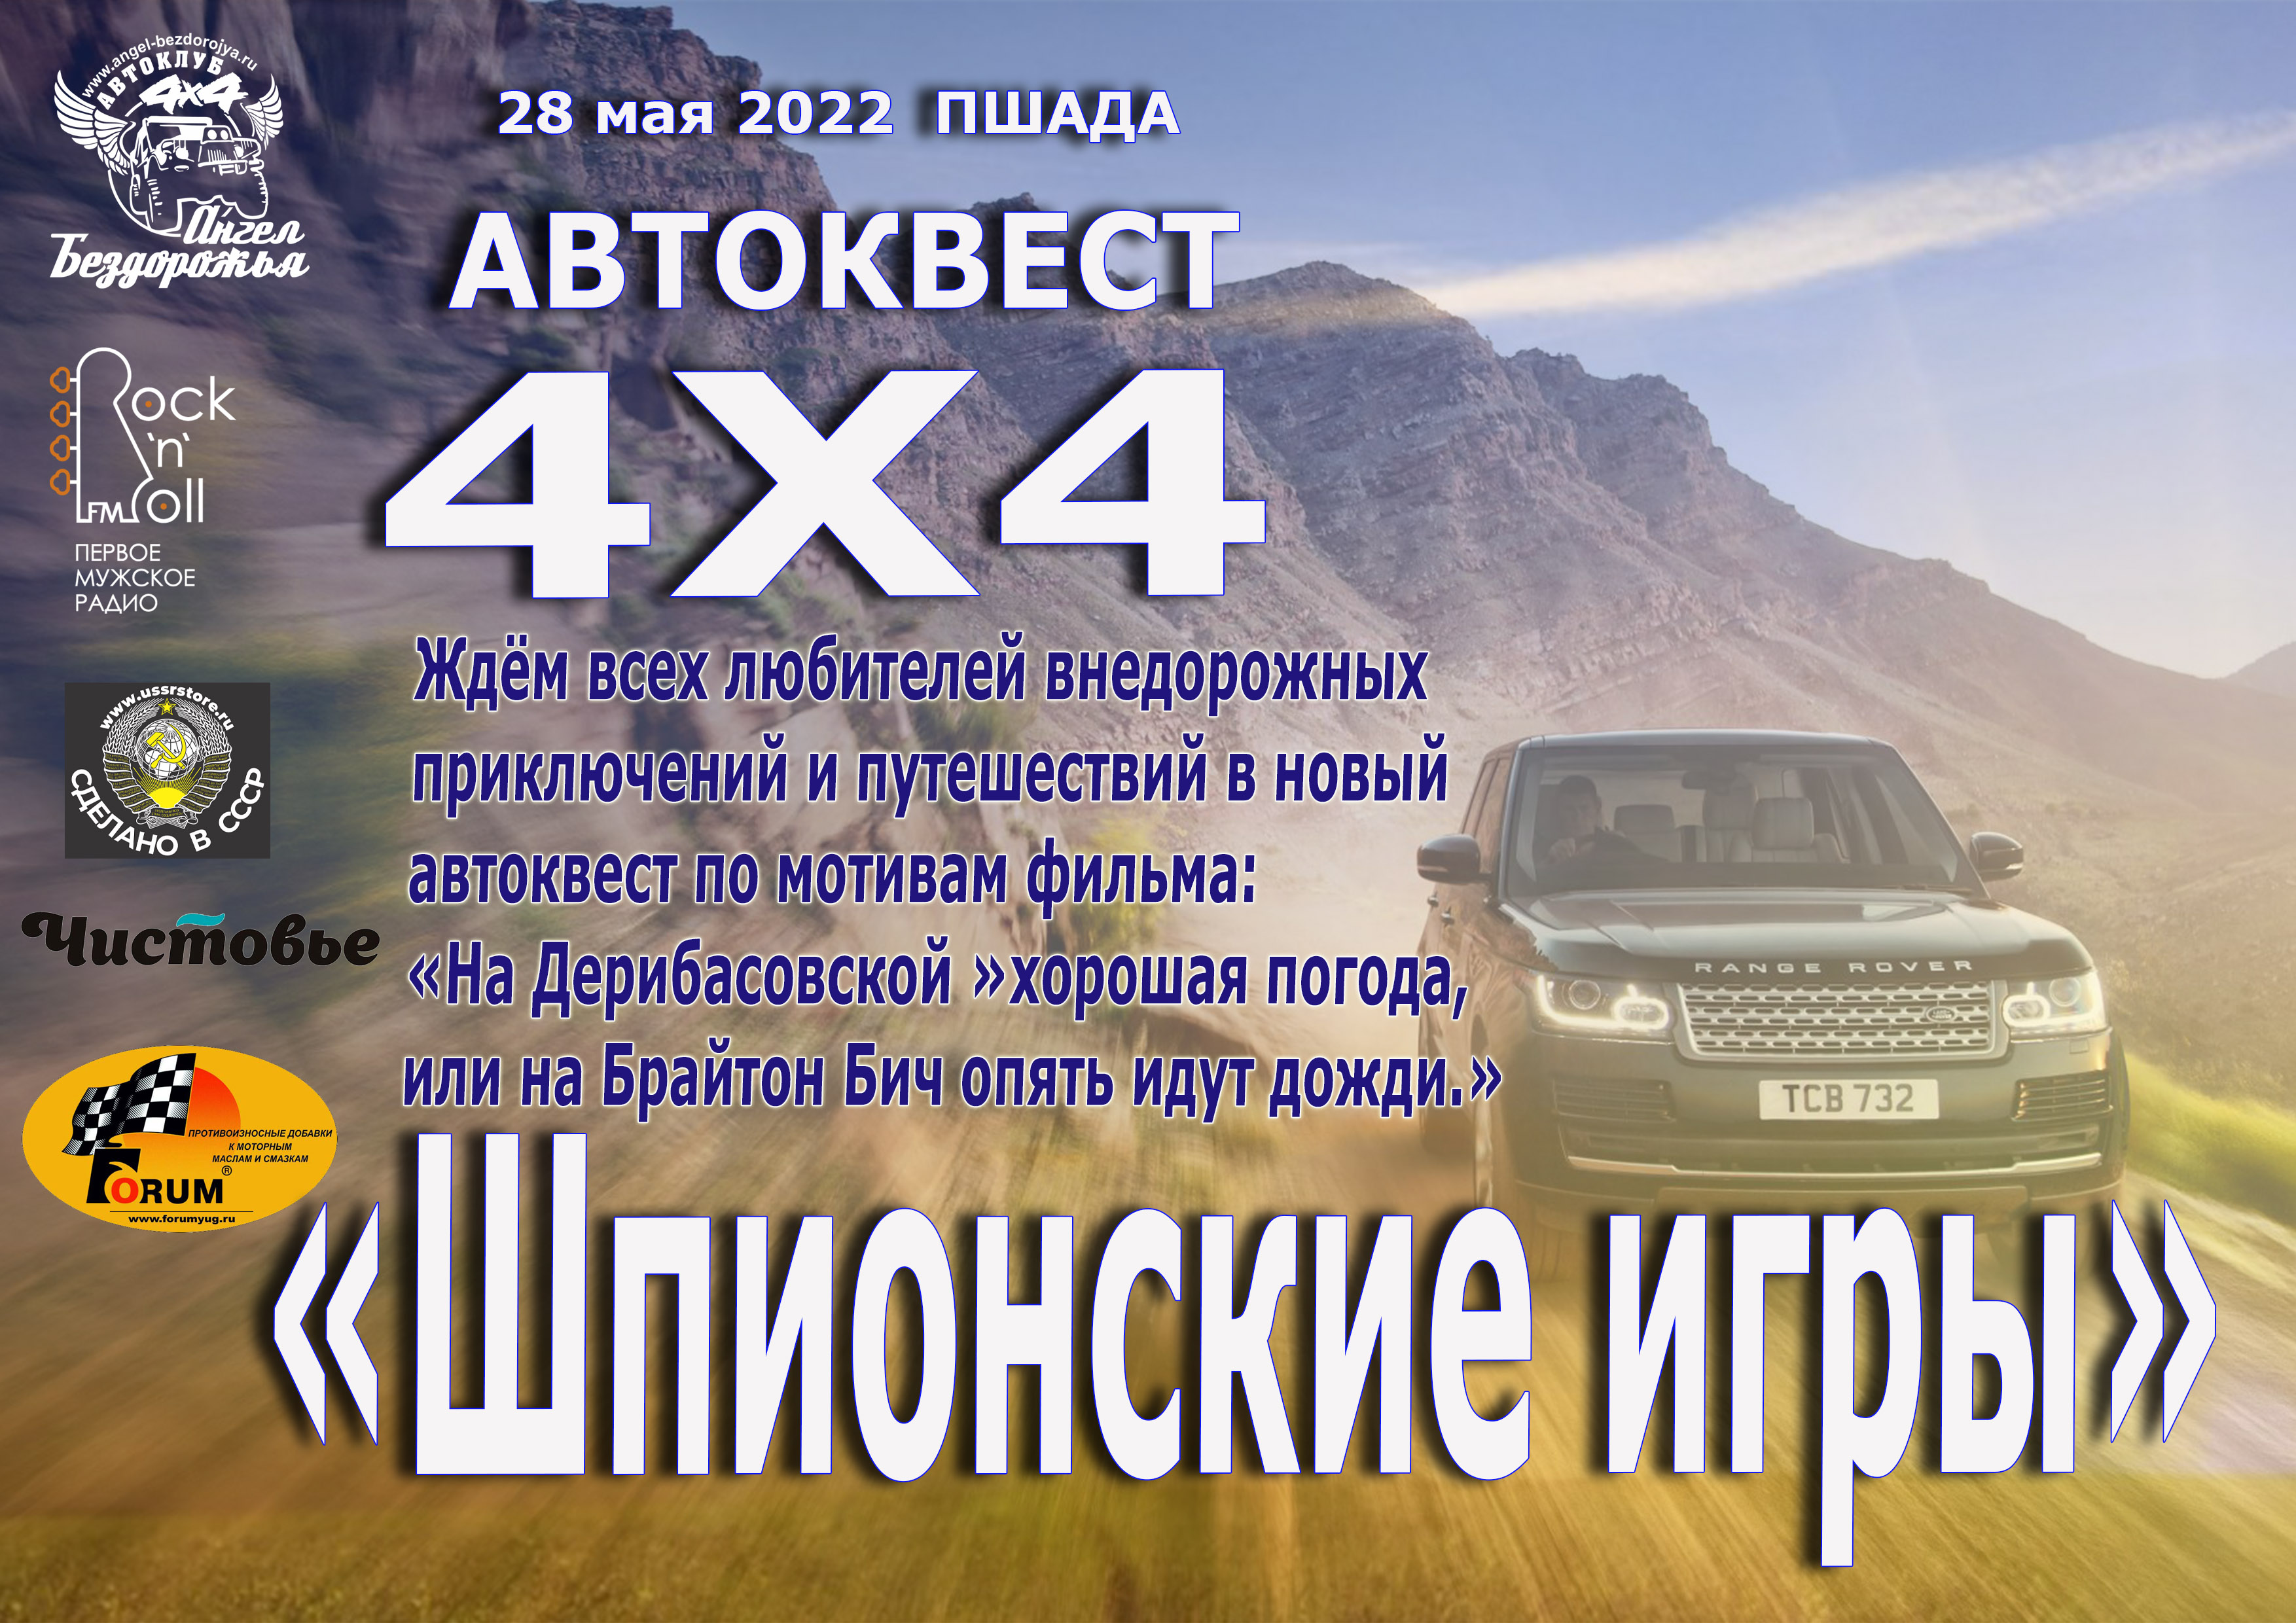 Автоквест 4х4 "Шпионские игры" 28.05.2022 г.